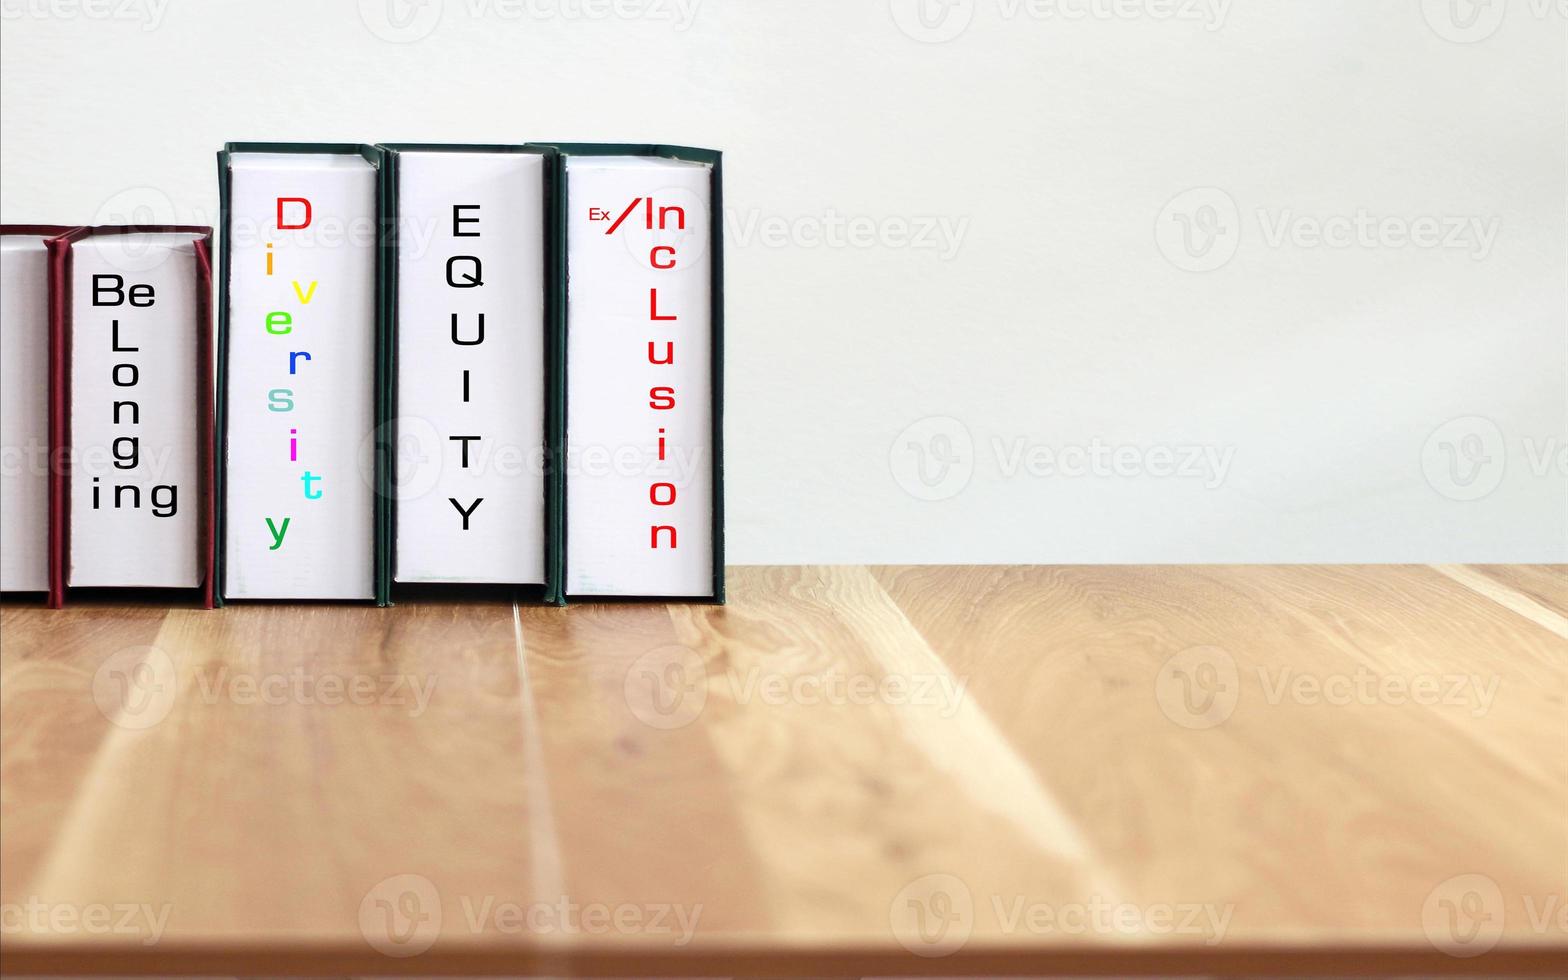 böcker med ord dei, mångfald, rättvisa, inkludering på träbord med vit bakgrund. foto